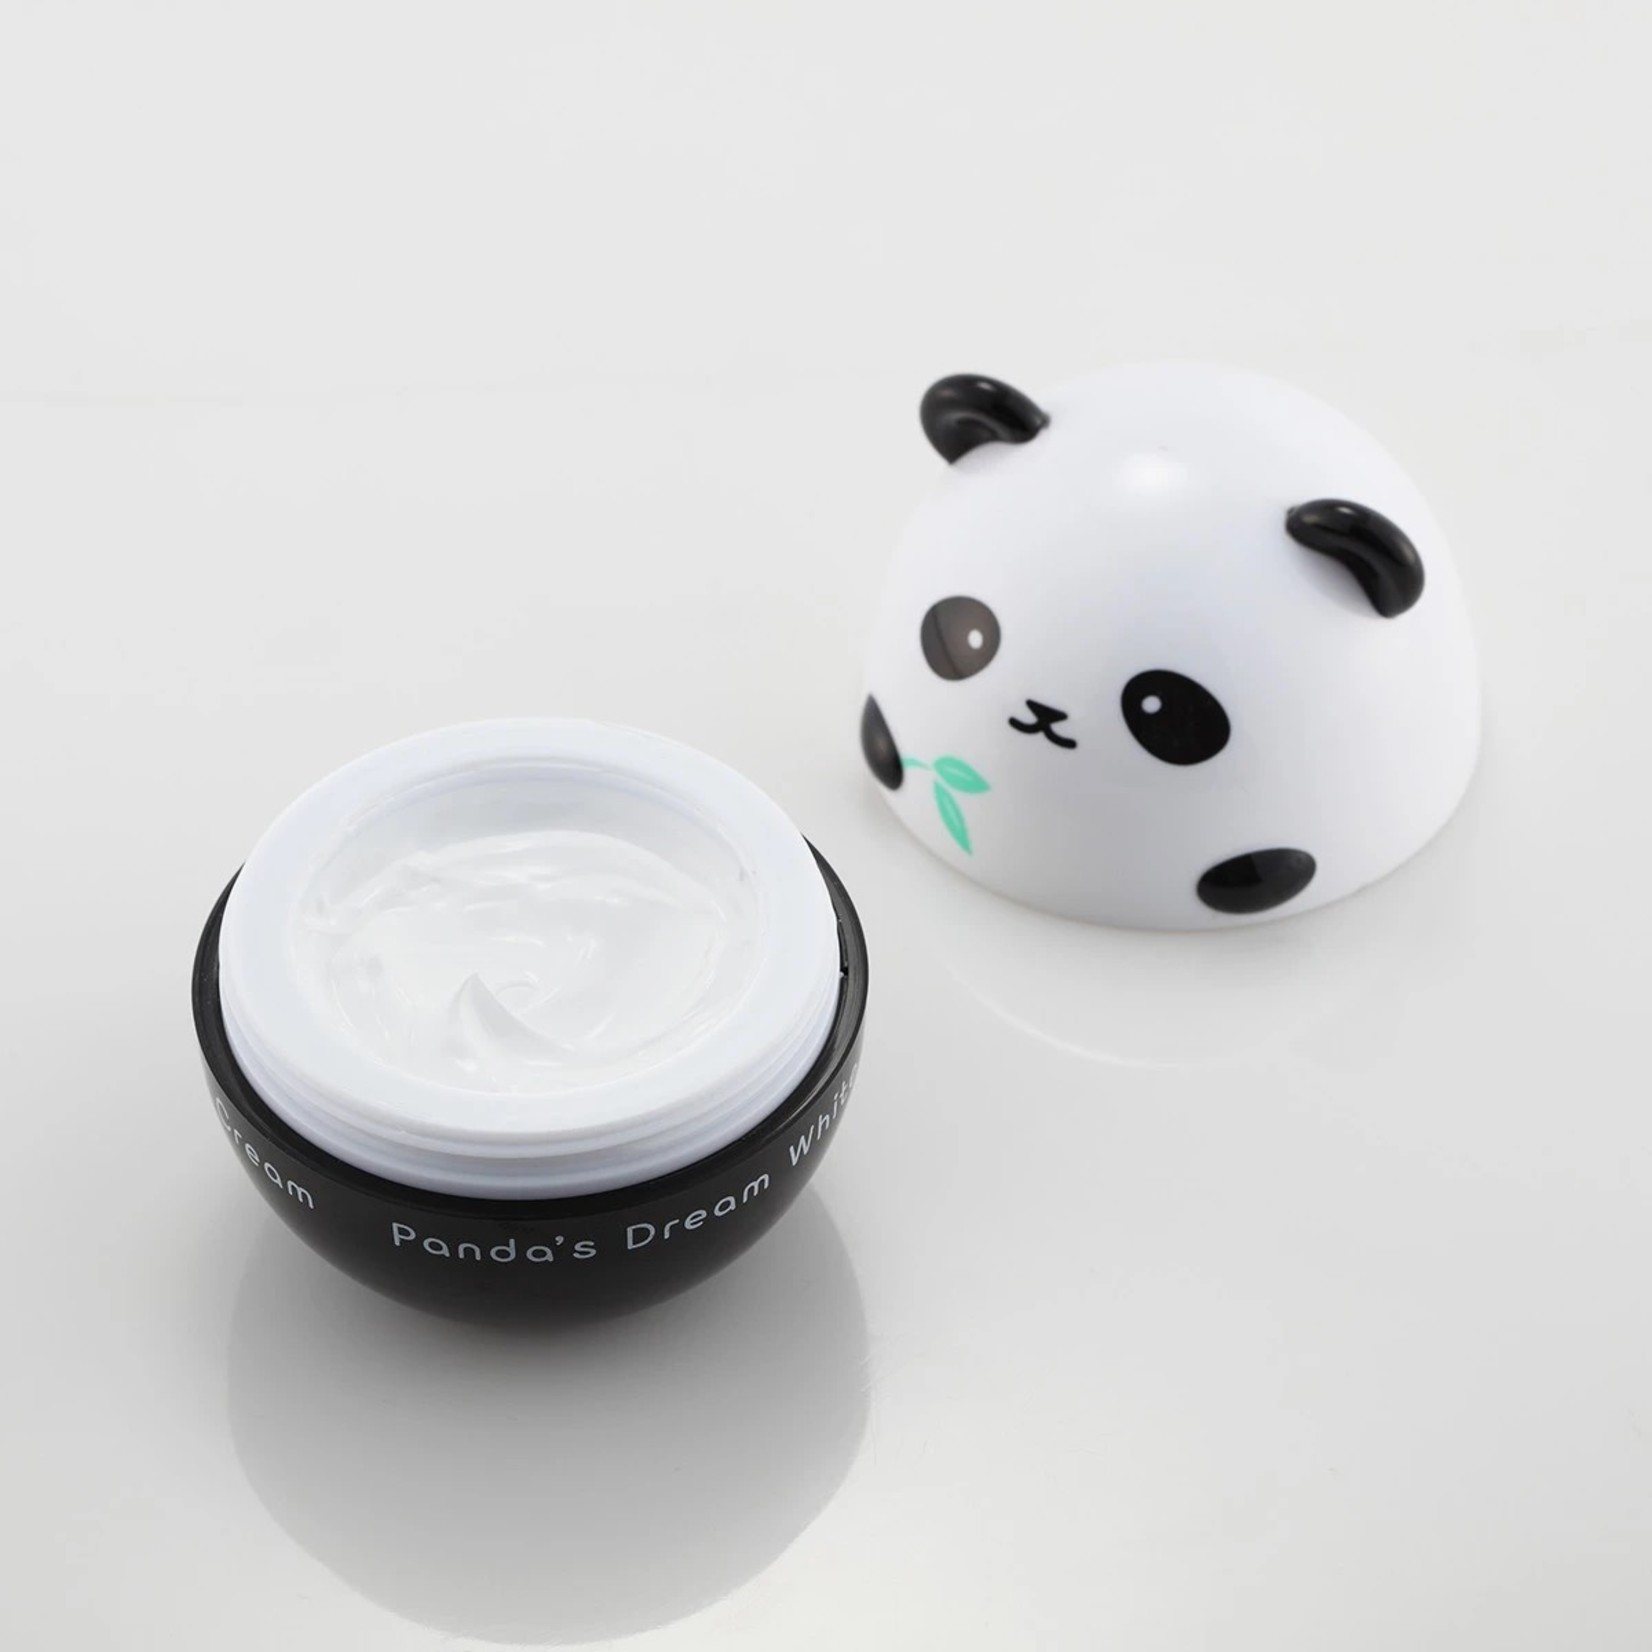 TONYMOLY Panda's Dream Hand Cream